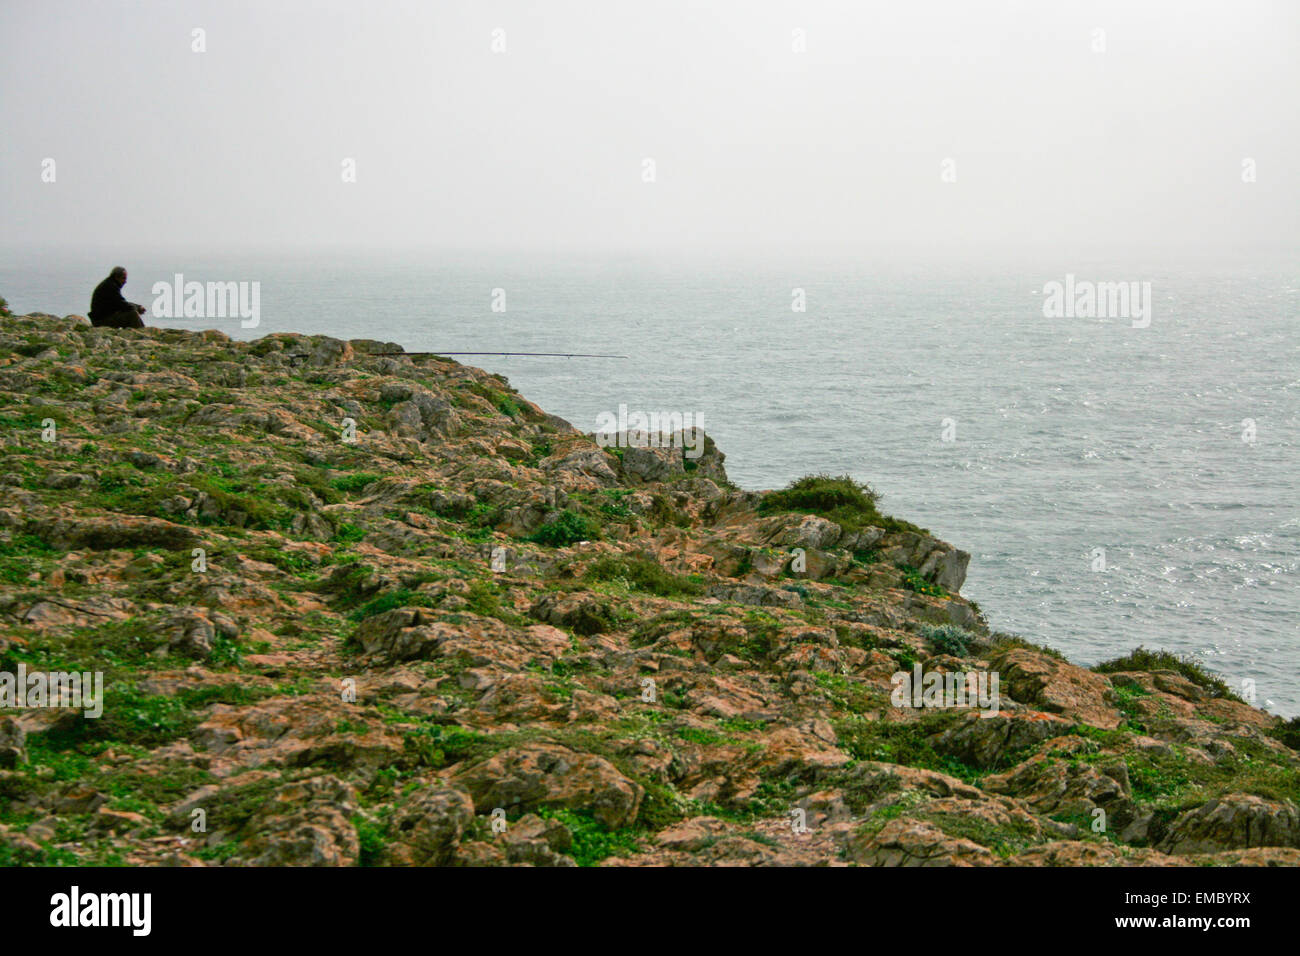 Ein Mann fischt auf Felsen am Cape Sagres Klippen, Portugal Stockfoto